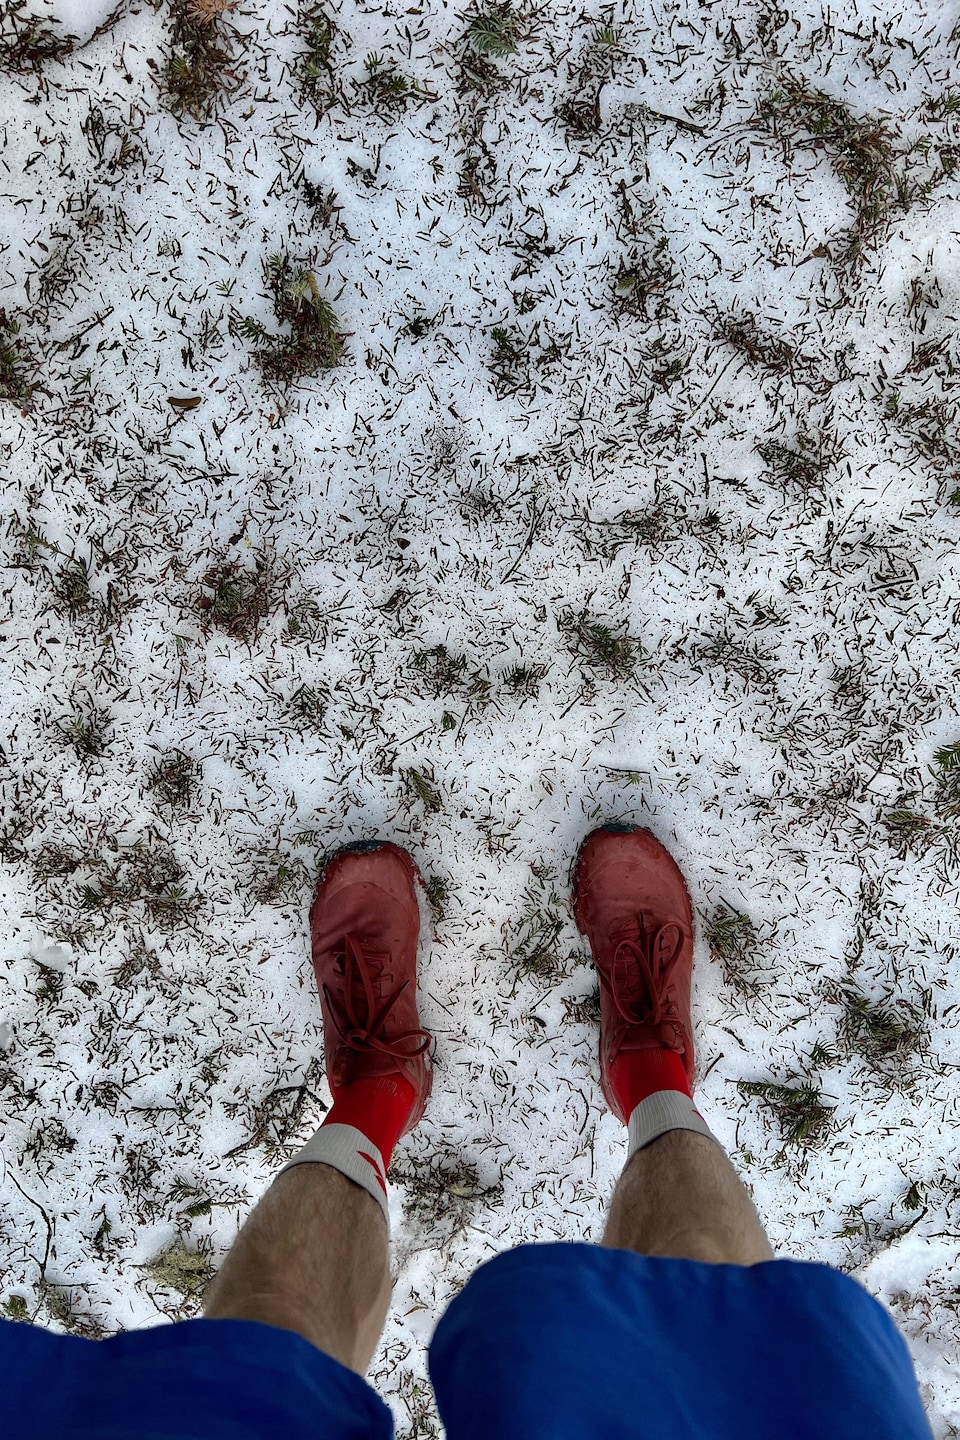 Les jambes d'une personne en short sur un gazon recouvert d'une fine couche de neige.